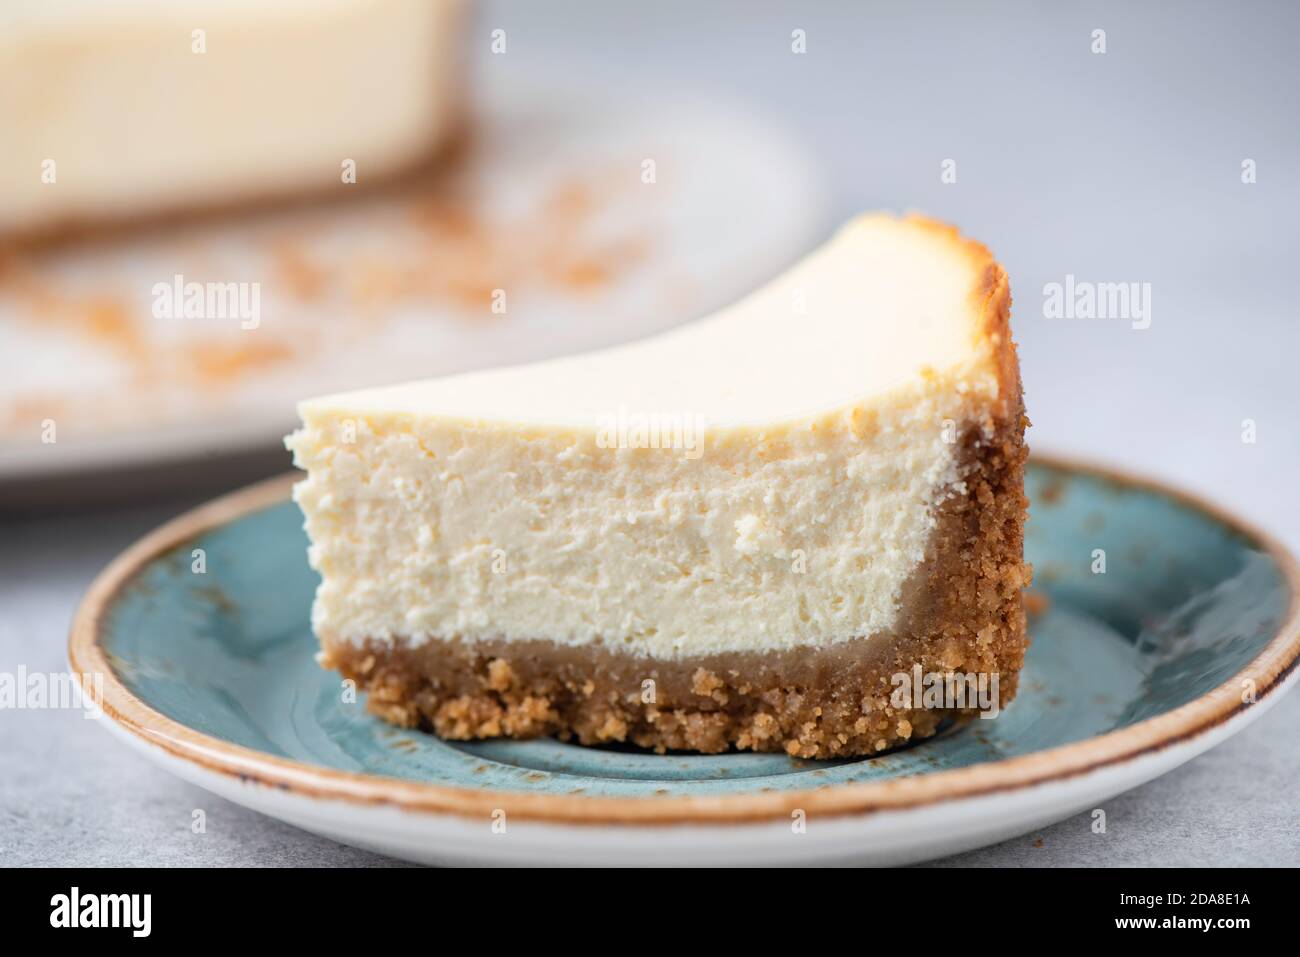 Corte de Cheesecake clásico de Nueva York en un plato azul, Vista de primer plano, enfoque selectivo Foto de stock